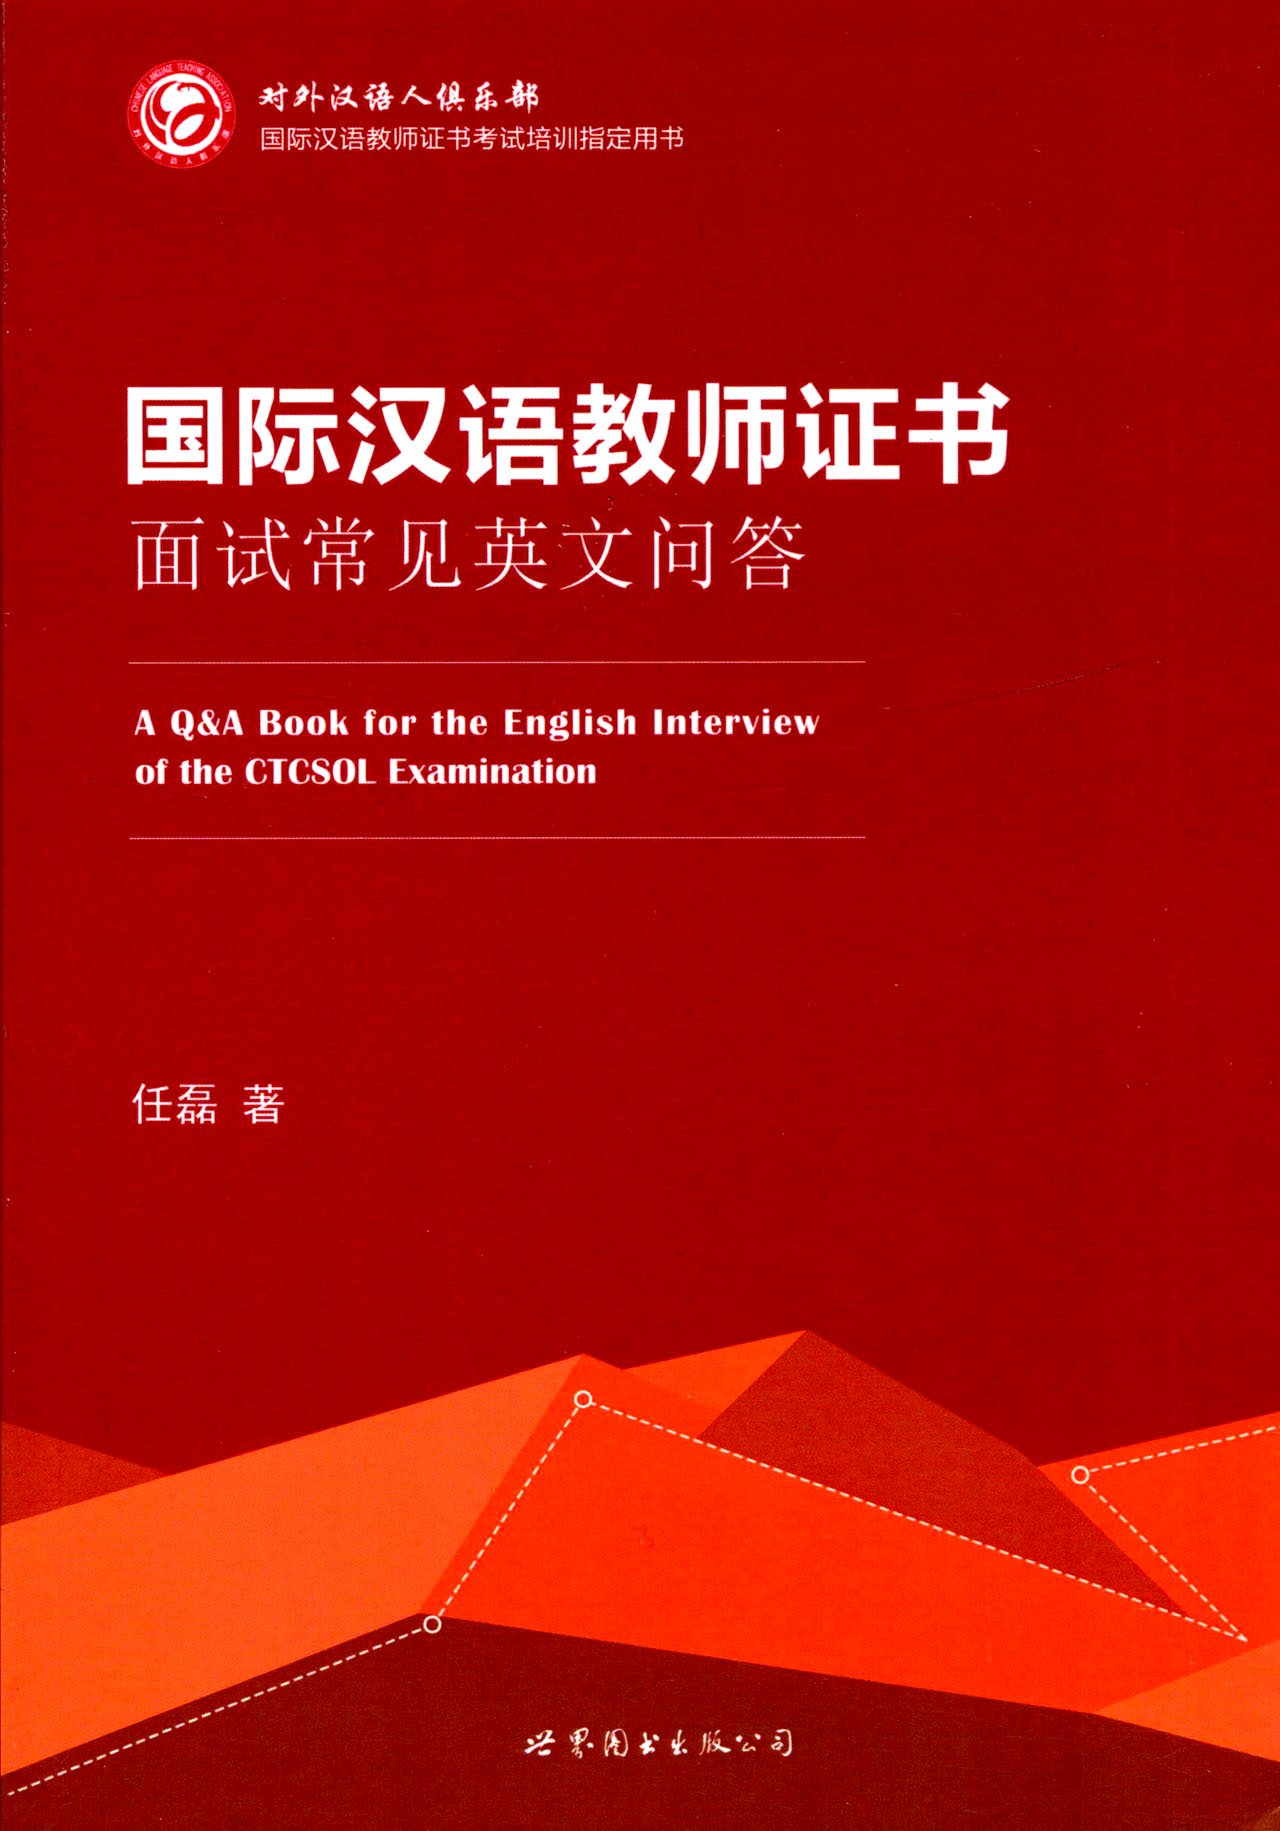 国际汉语教师证书面试常见英文问答45讲